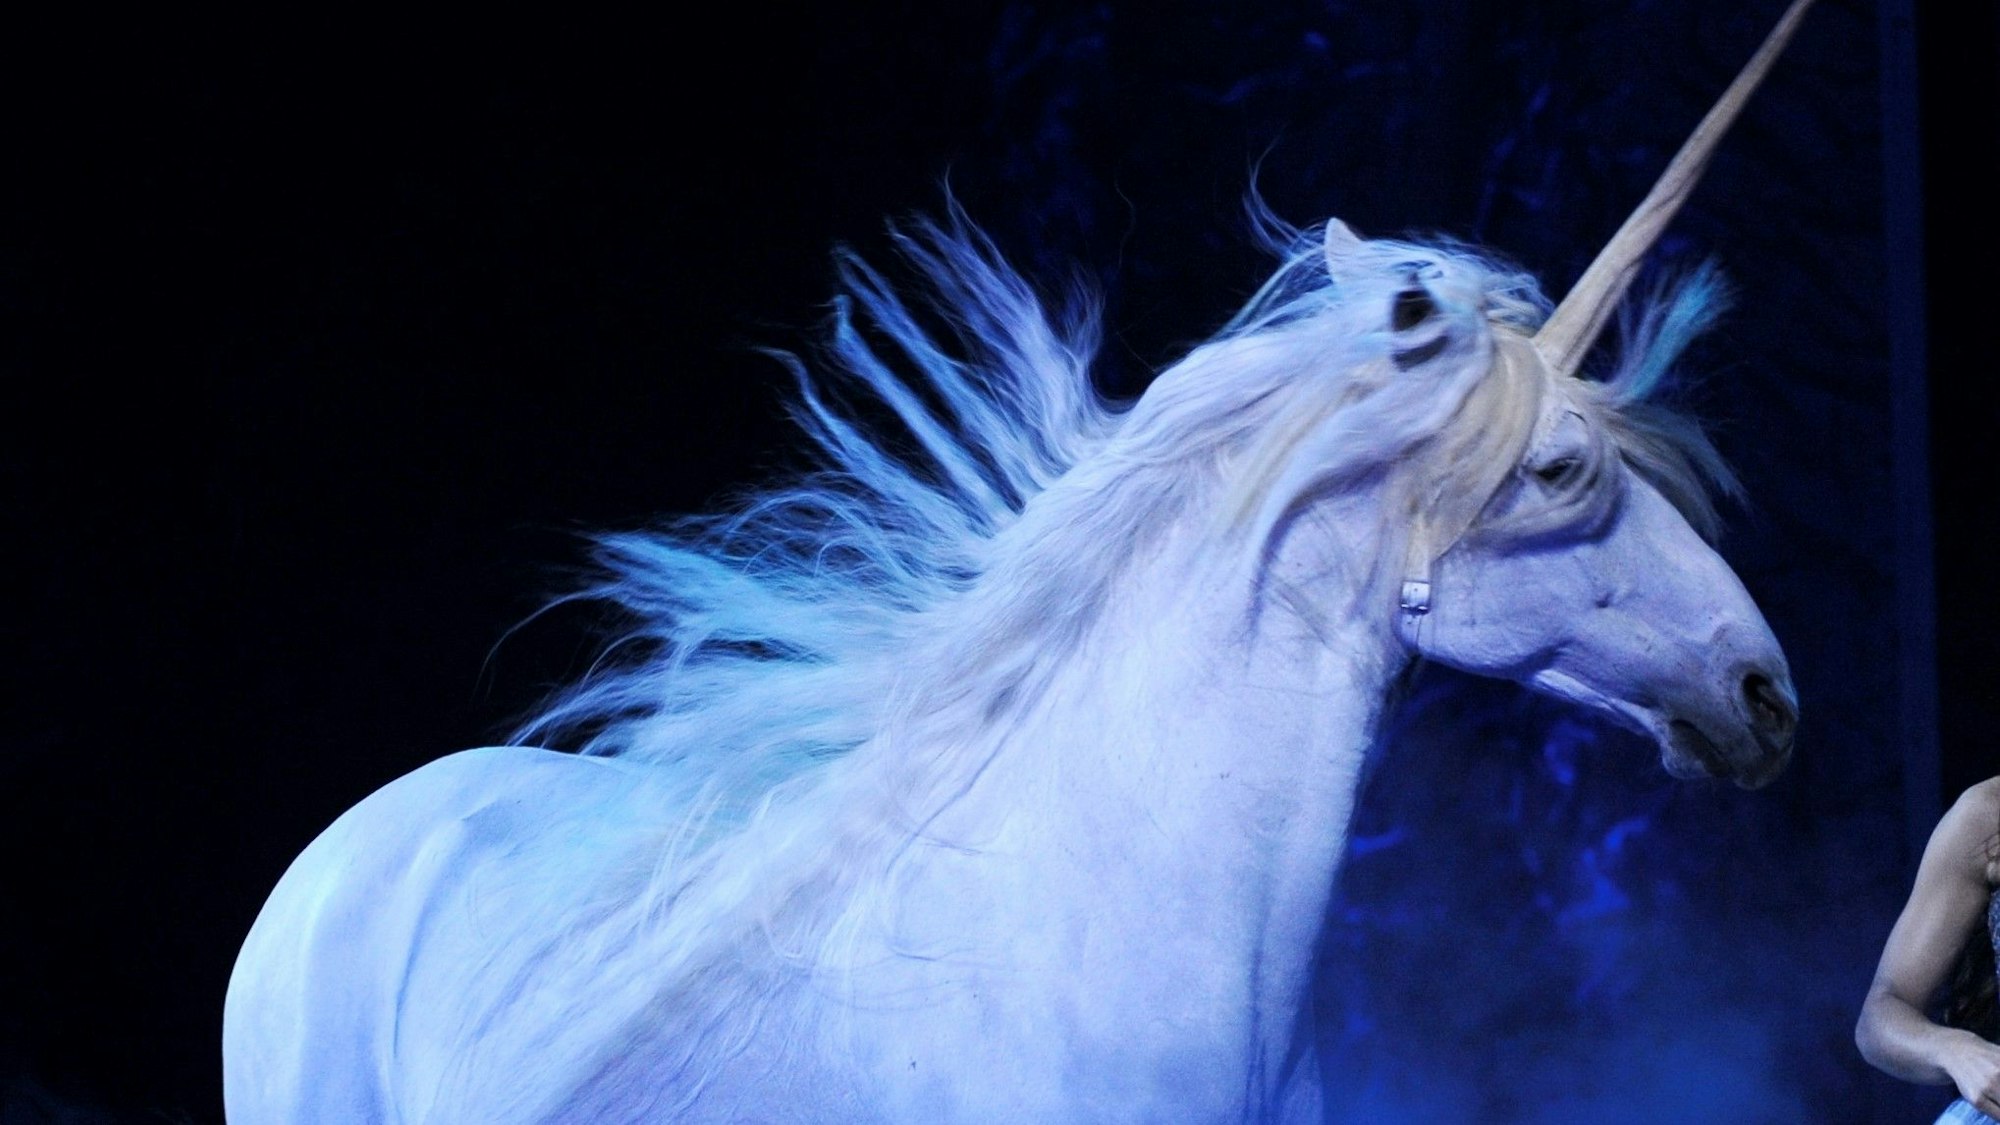 Ein zum Einhorn kostümiertes Pferd tritt bei einer Vorstellung der Show ‚Magnifico‘ auf.